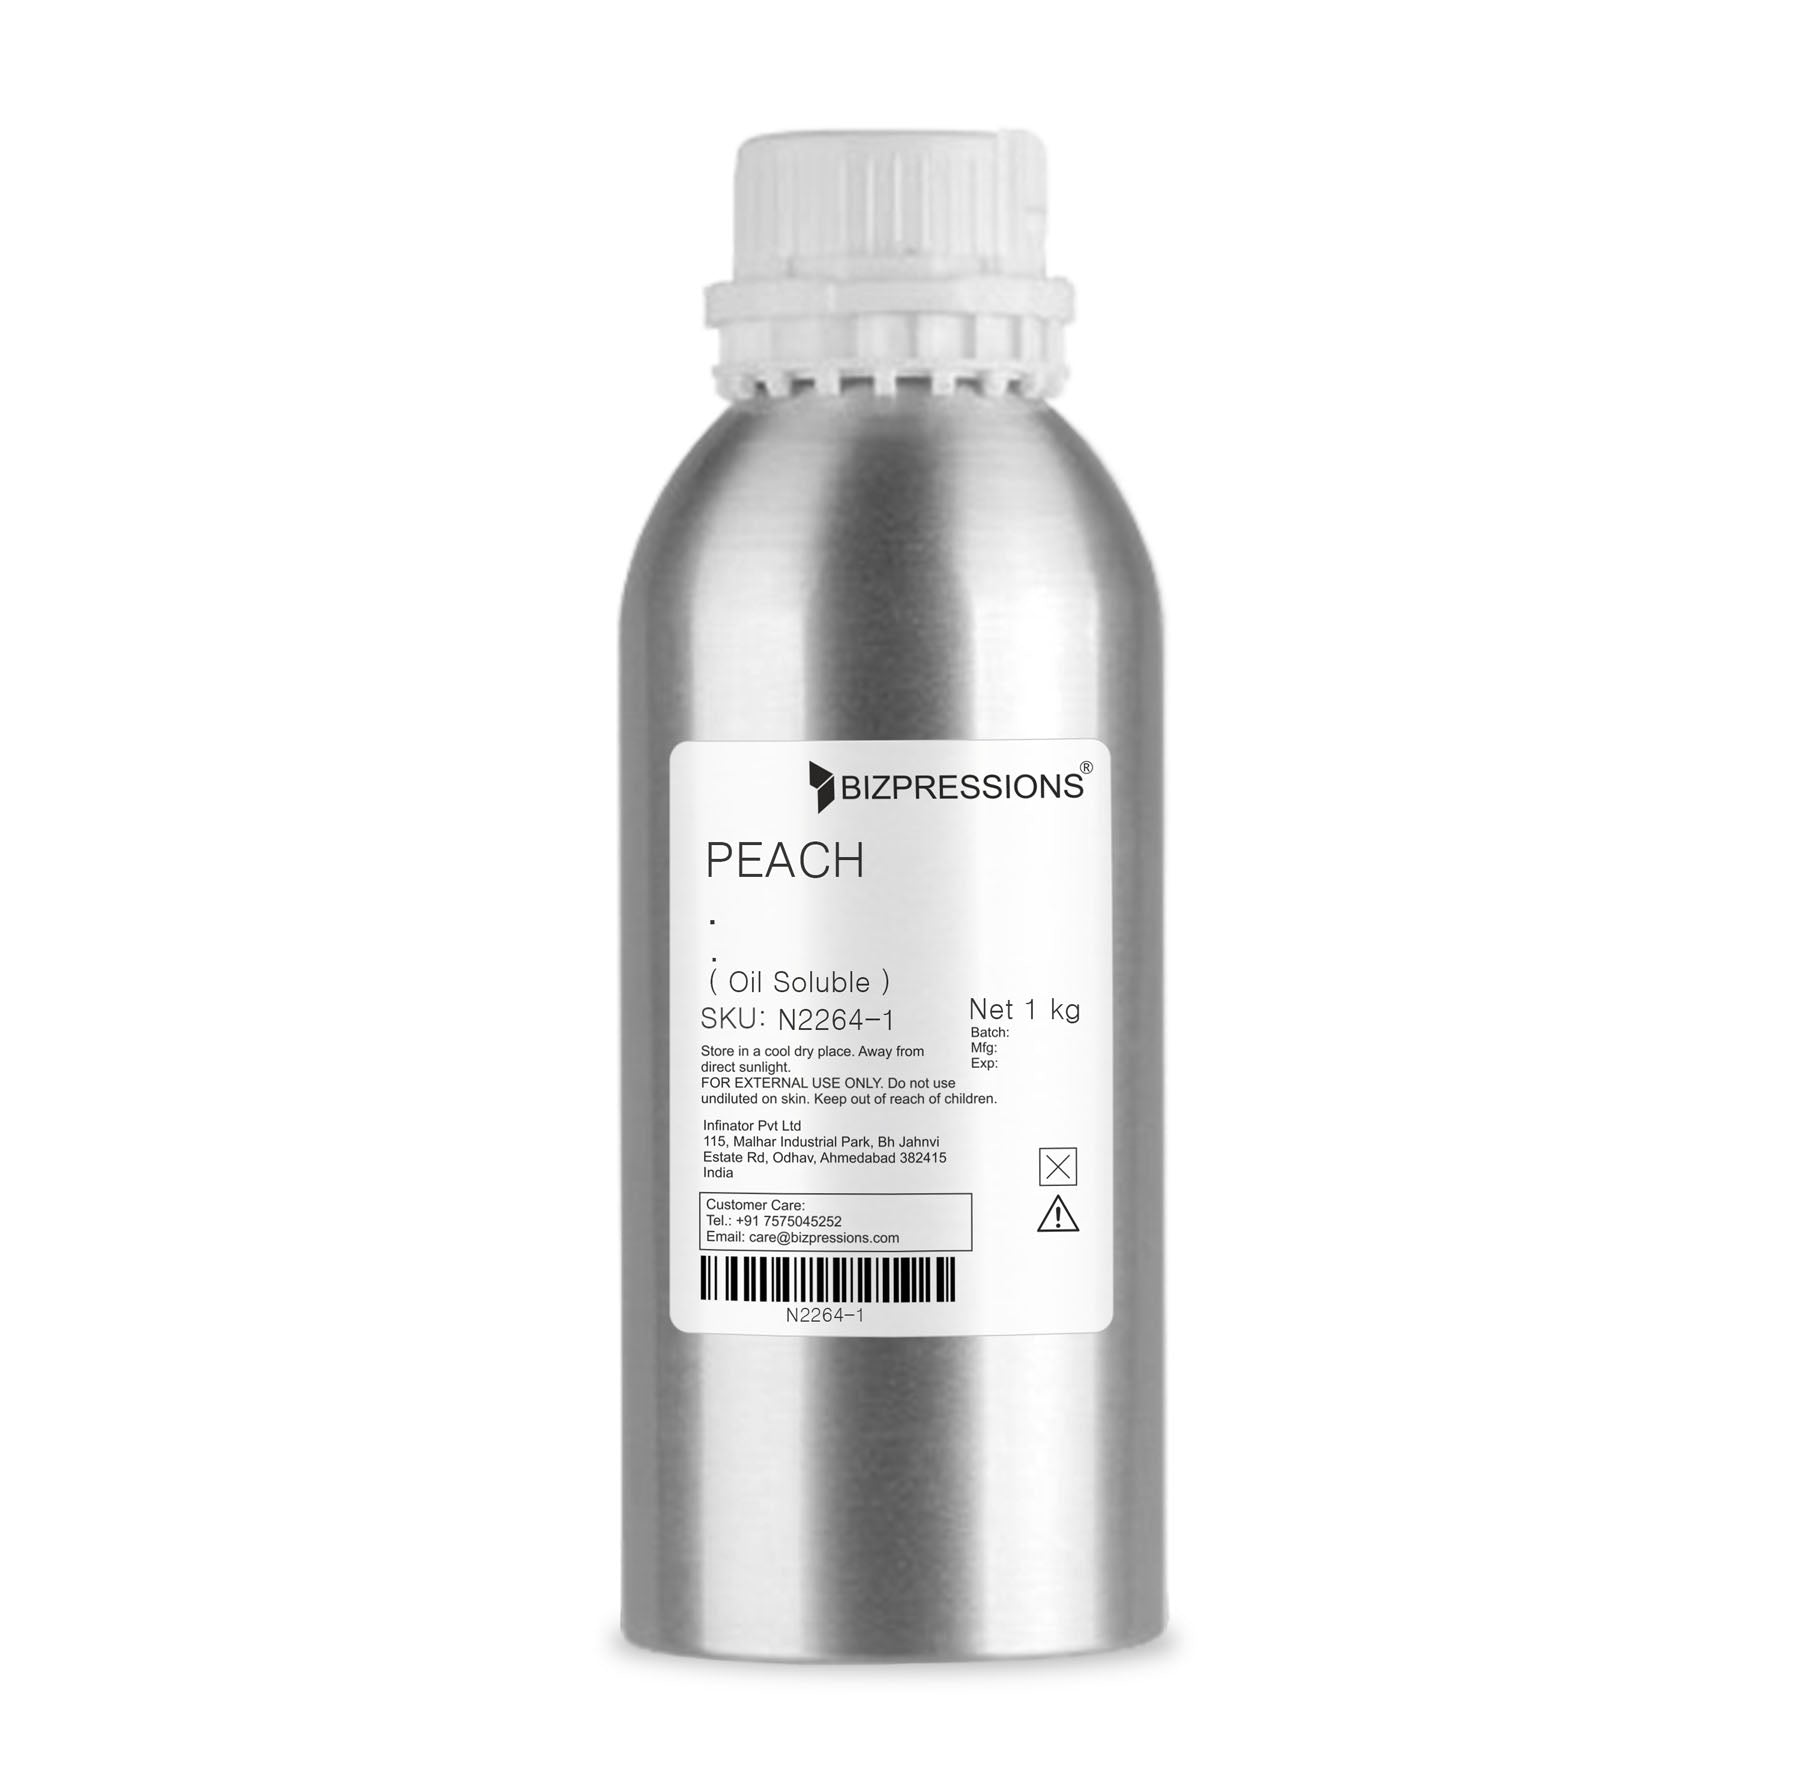 PEACH - Fragrance ( Oil Soluble ) - 1 kg